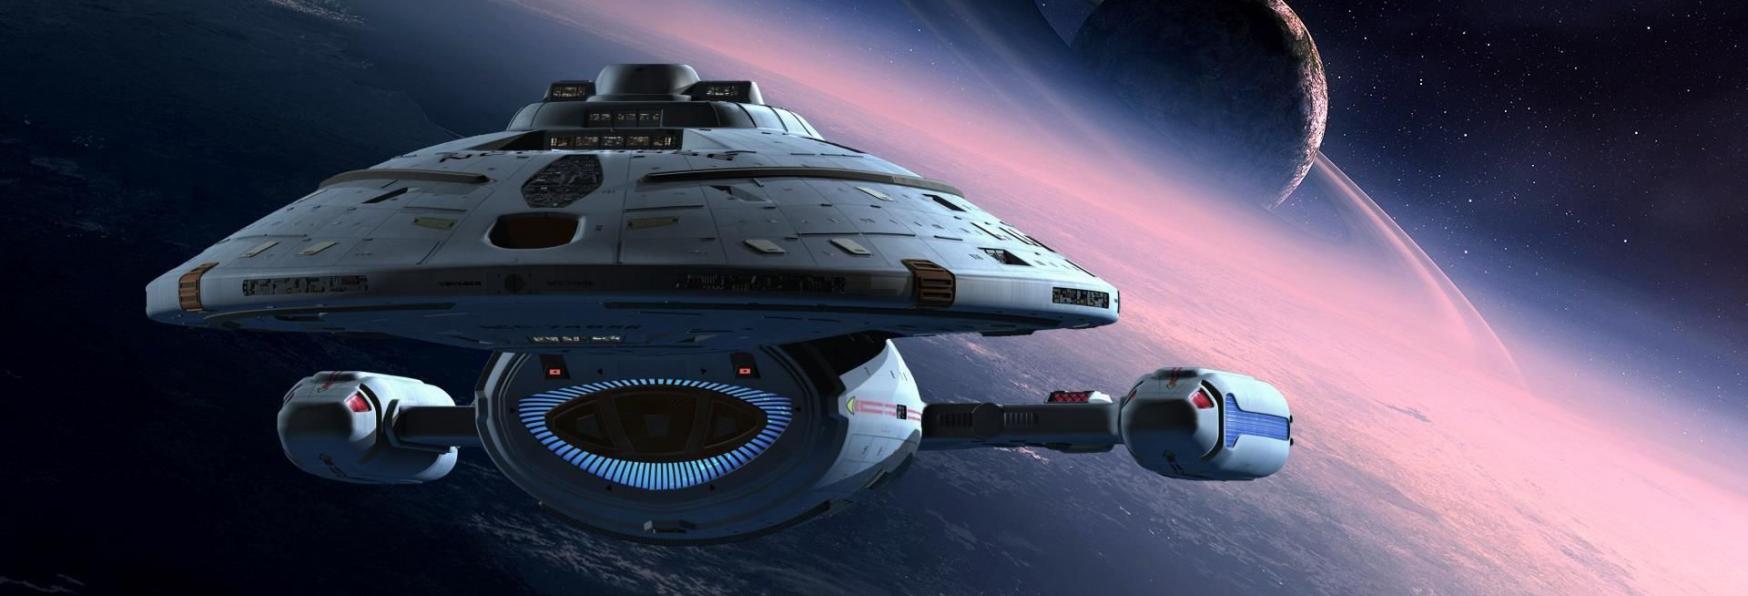 Il Documentario di Star Trek: Voyager è il Documentario più finanziato di Sempre tramite Crowdfounding